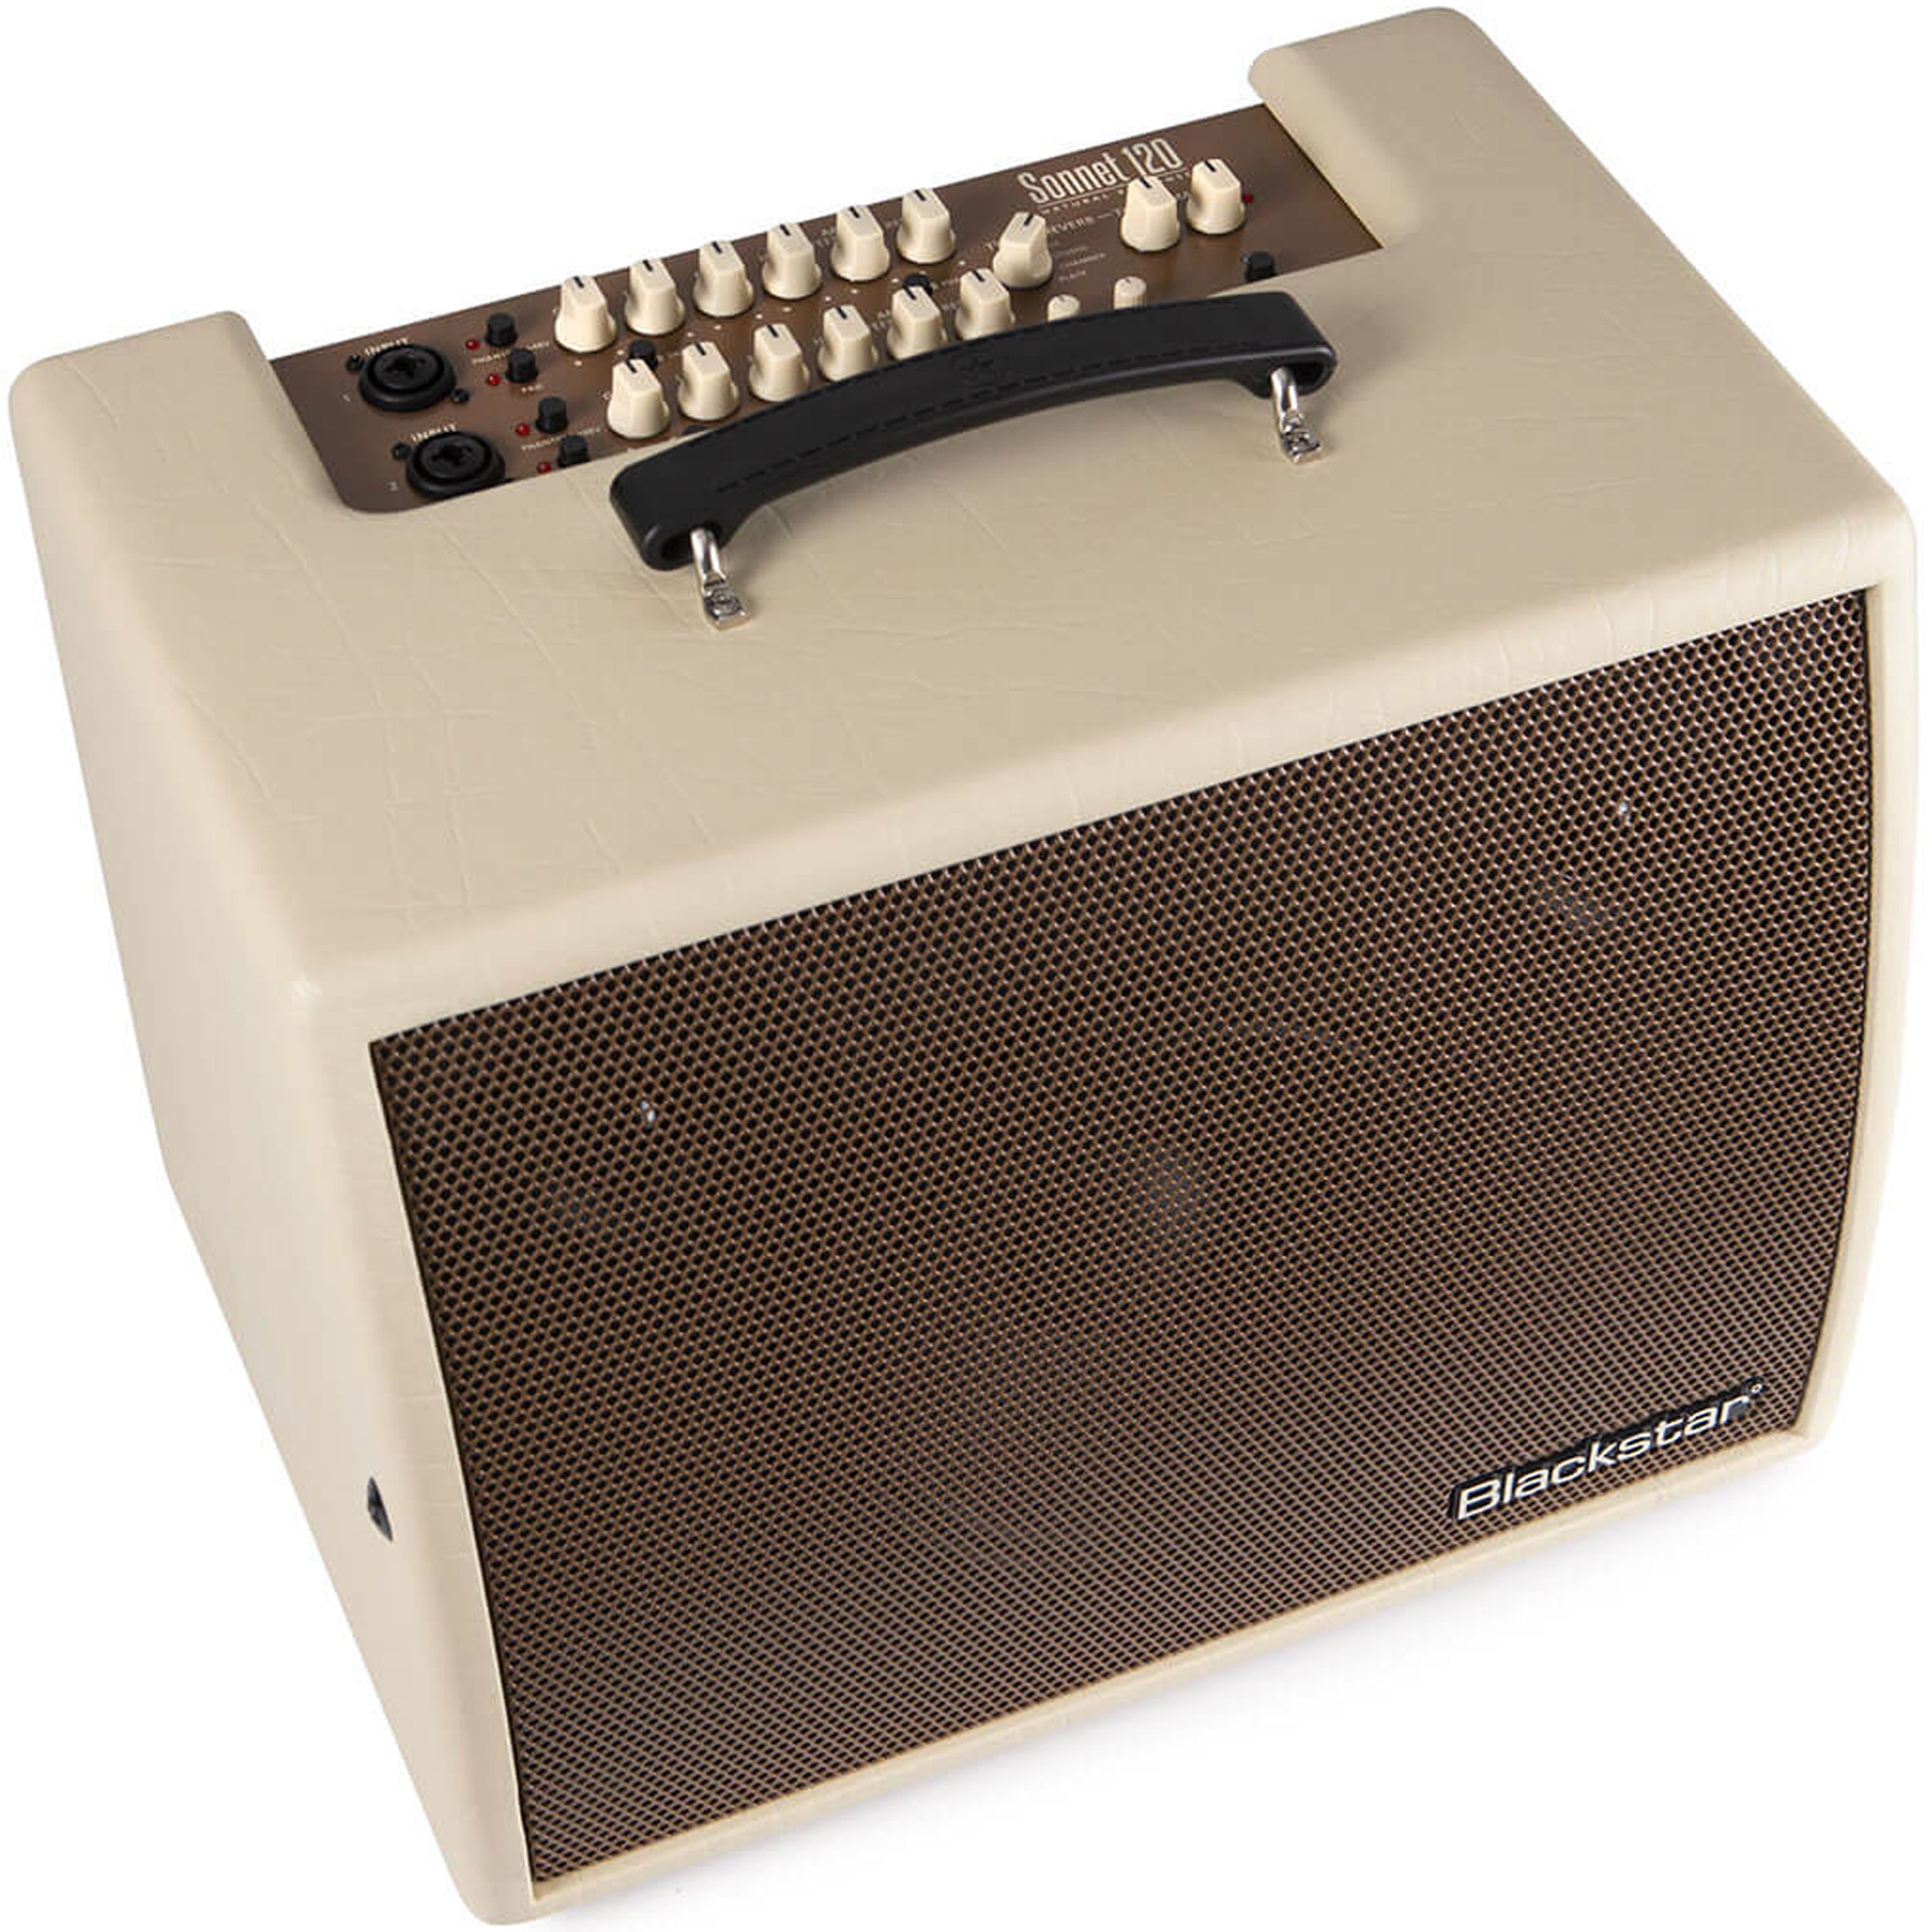 Blackstar Sonnet 120 Watt Acoustic Amplifier Blonde